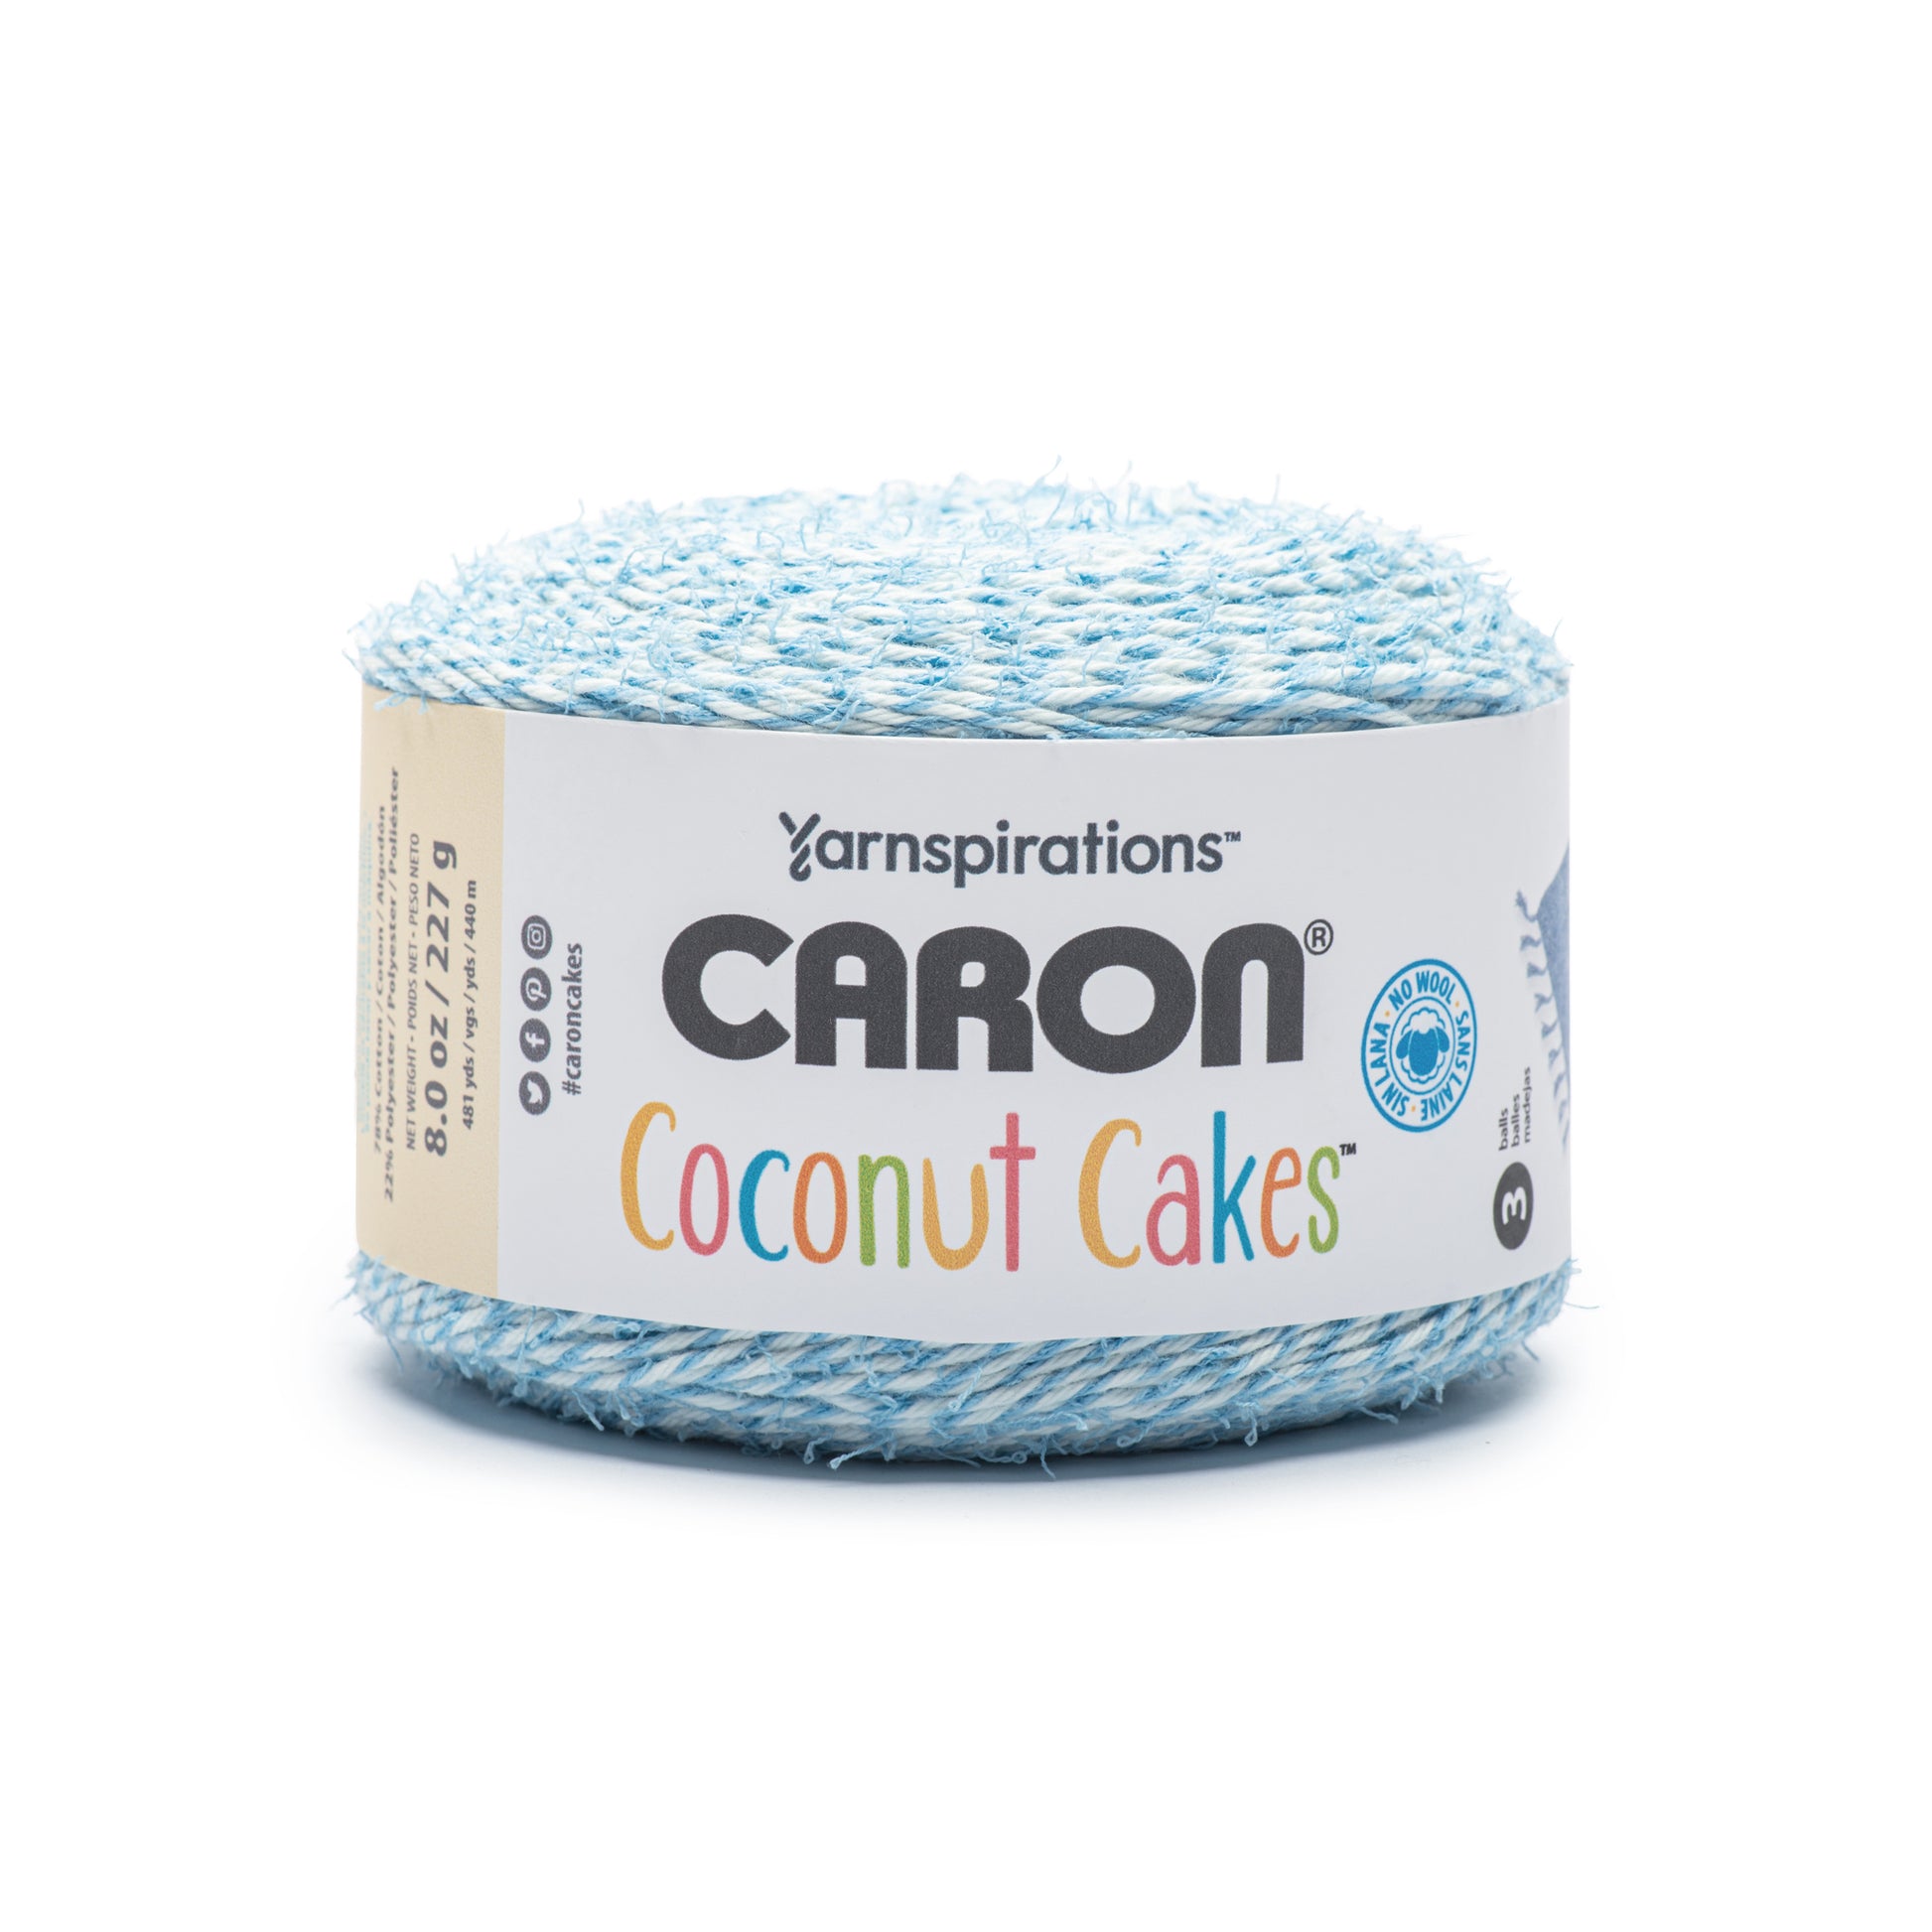 Caron Coconut Cakes Yarn (227g/8oz) - Retailer Exclusive